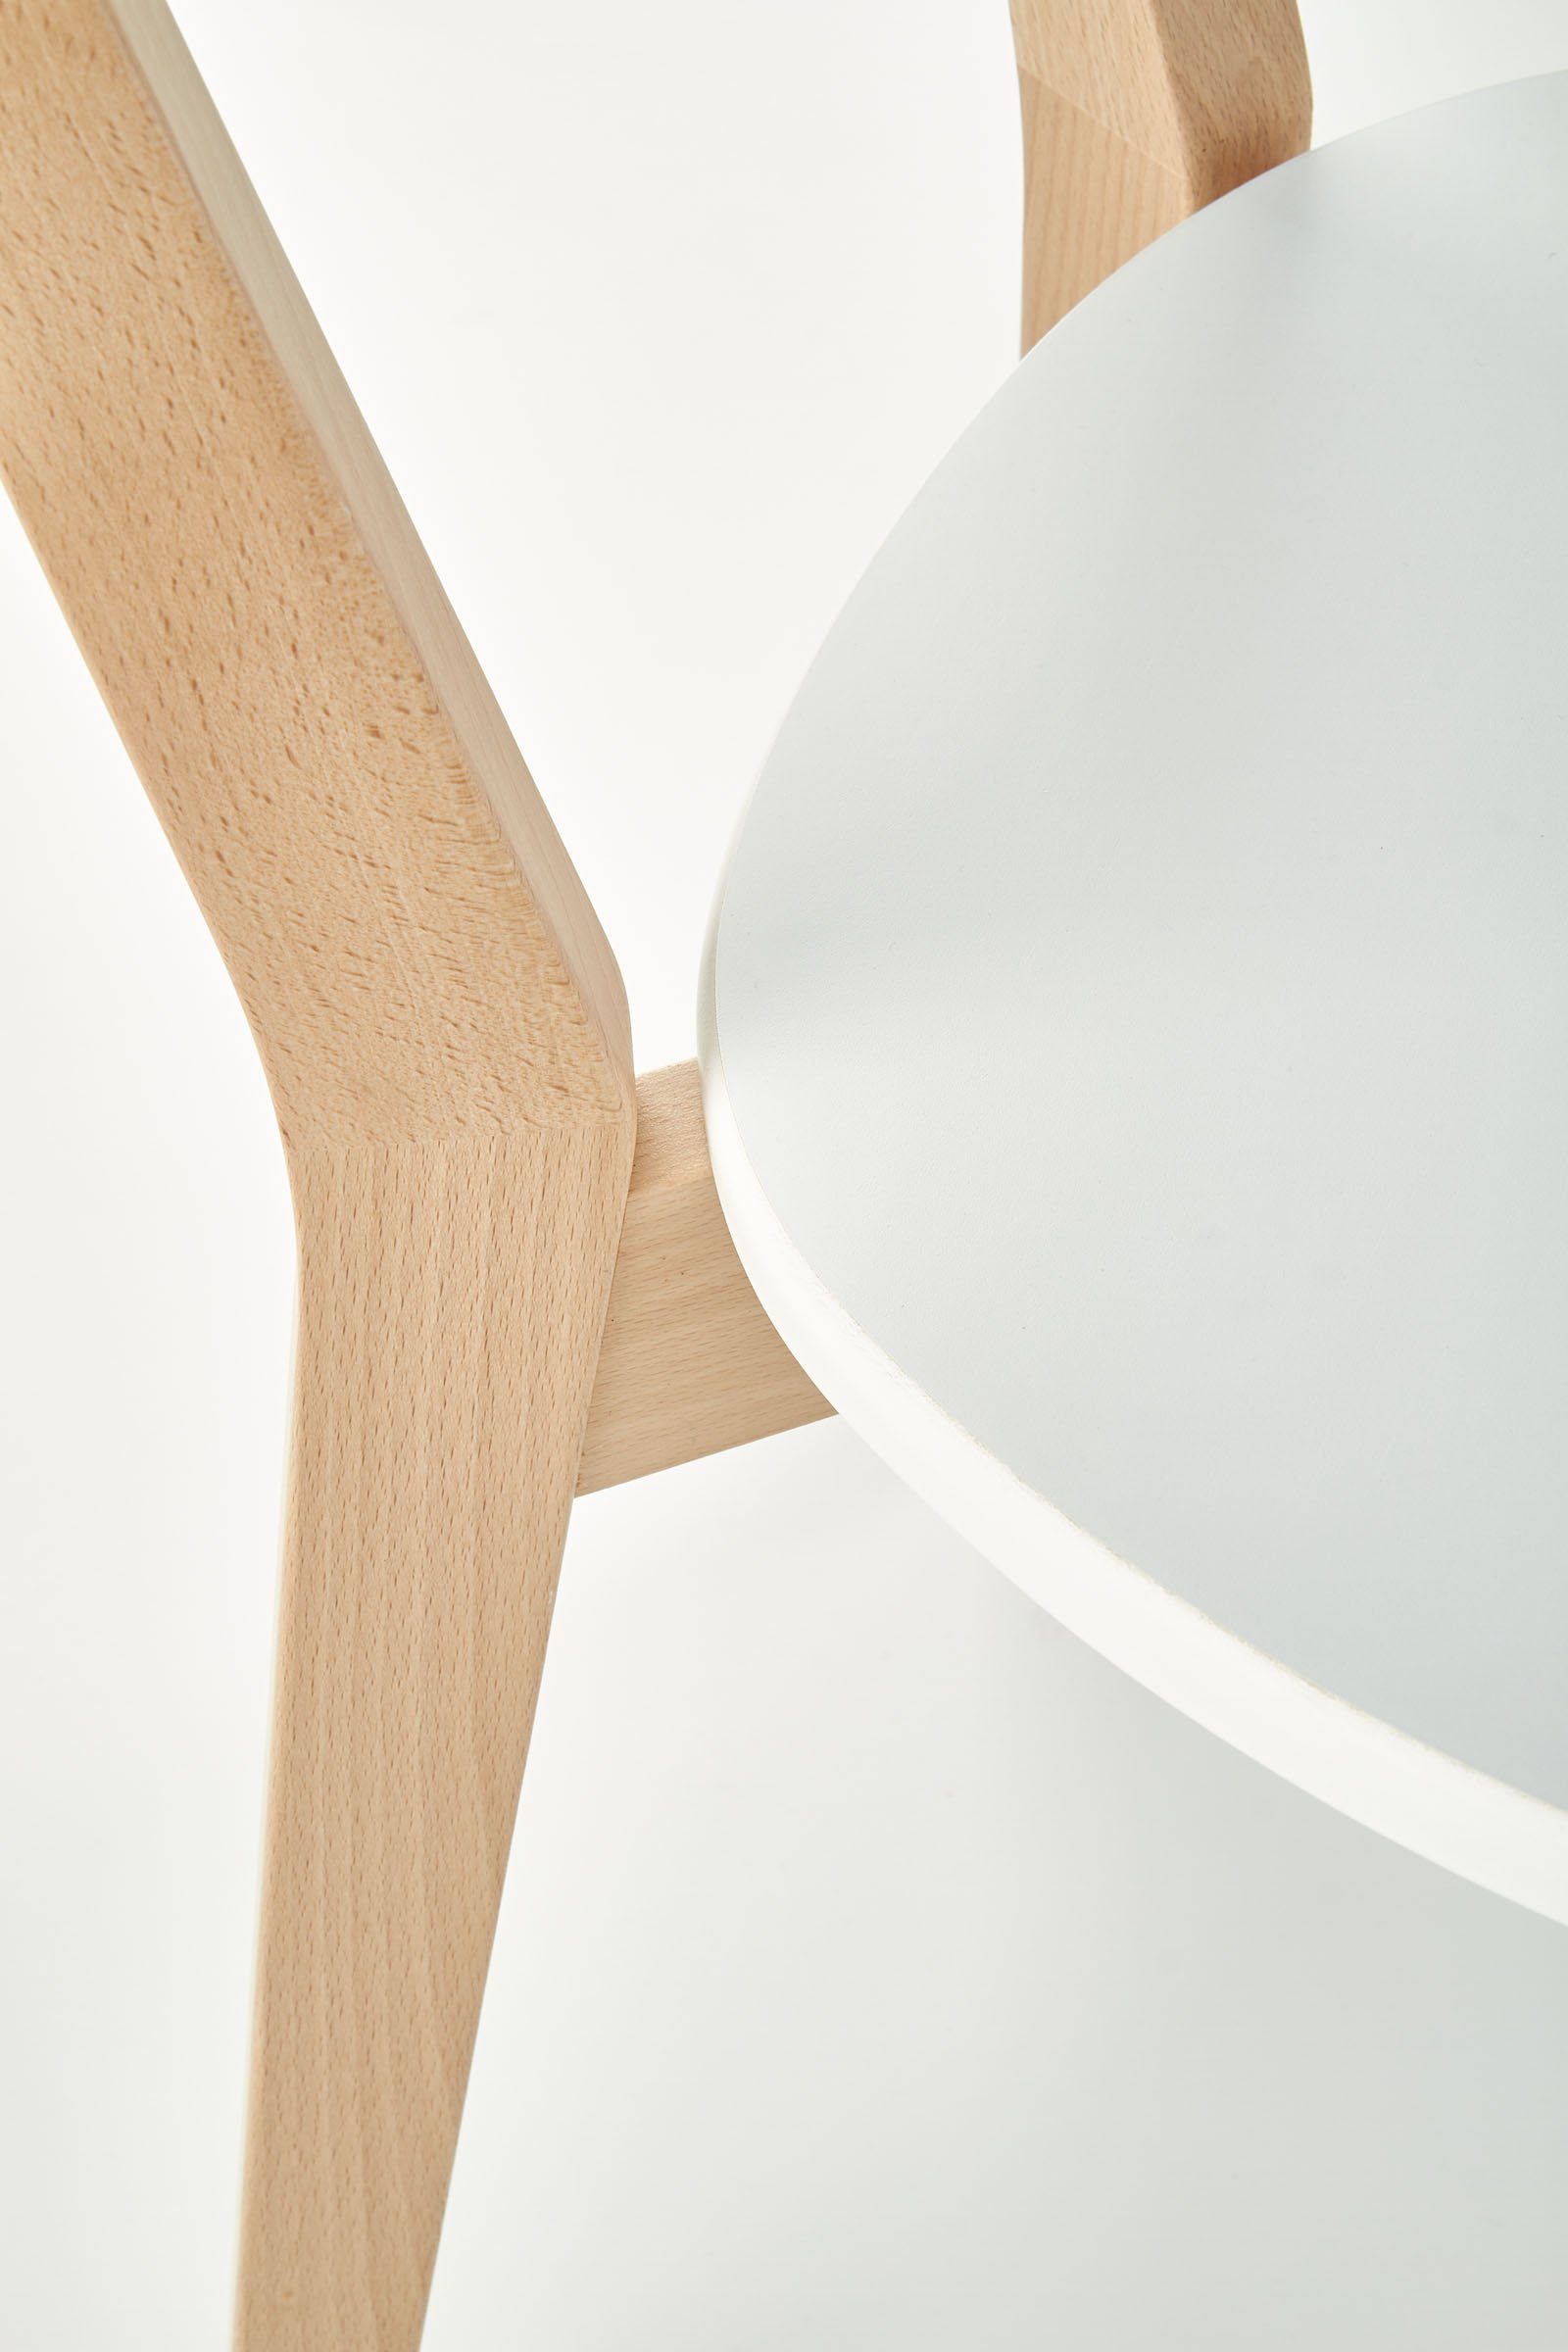 FabiMax 4-Fußstuhl Holzstuhl Lenio, Skandi-Stil, stabil, aus / modern, Buche, Weiß Gestell Natur pflegeleicht